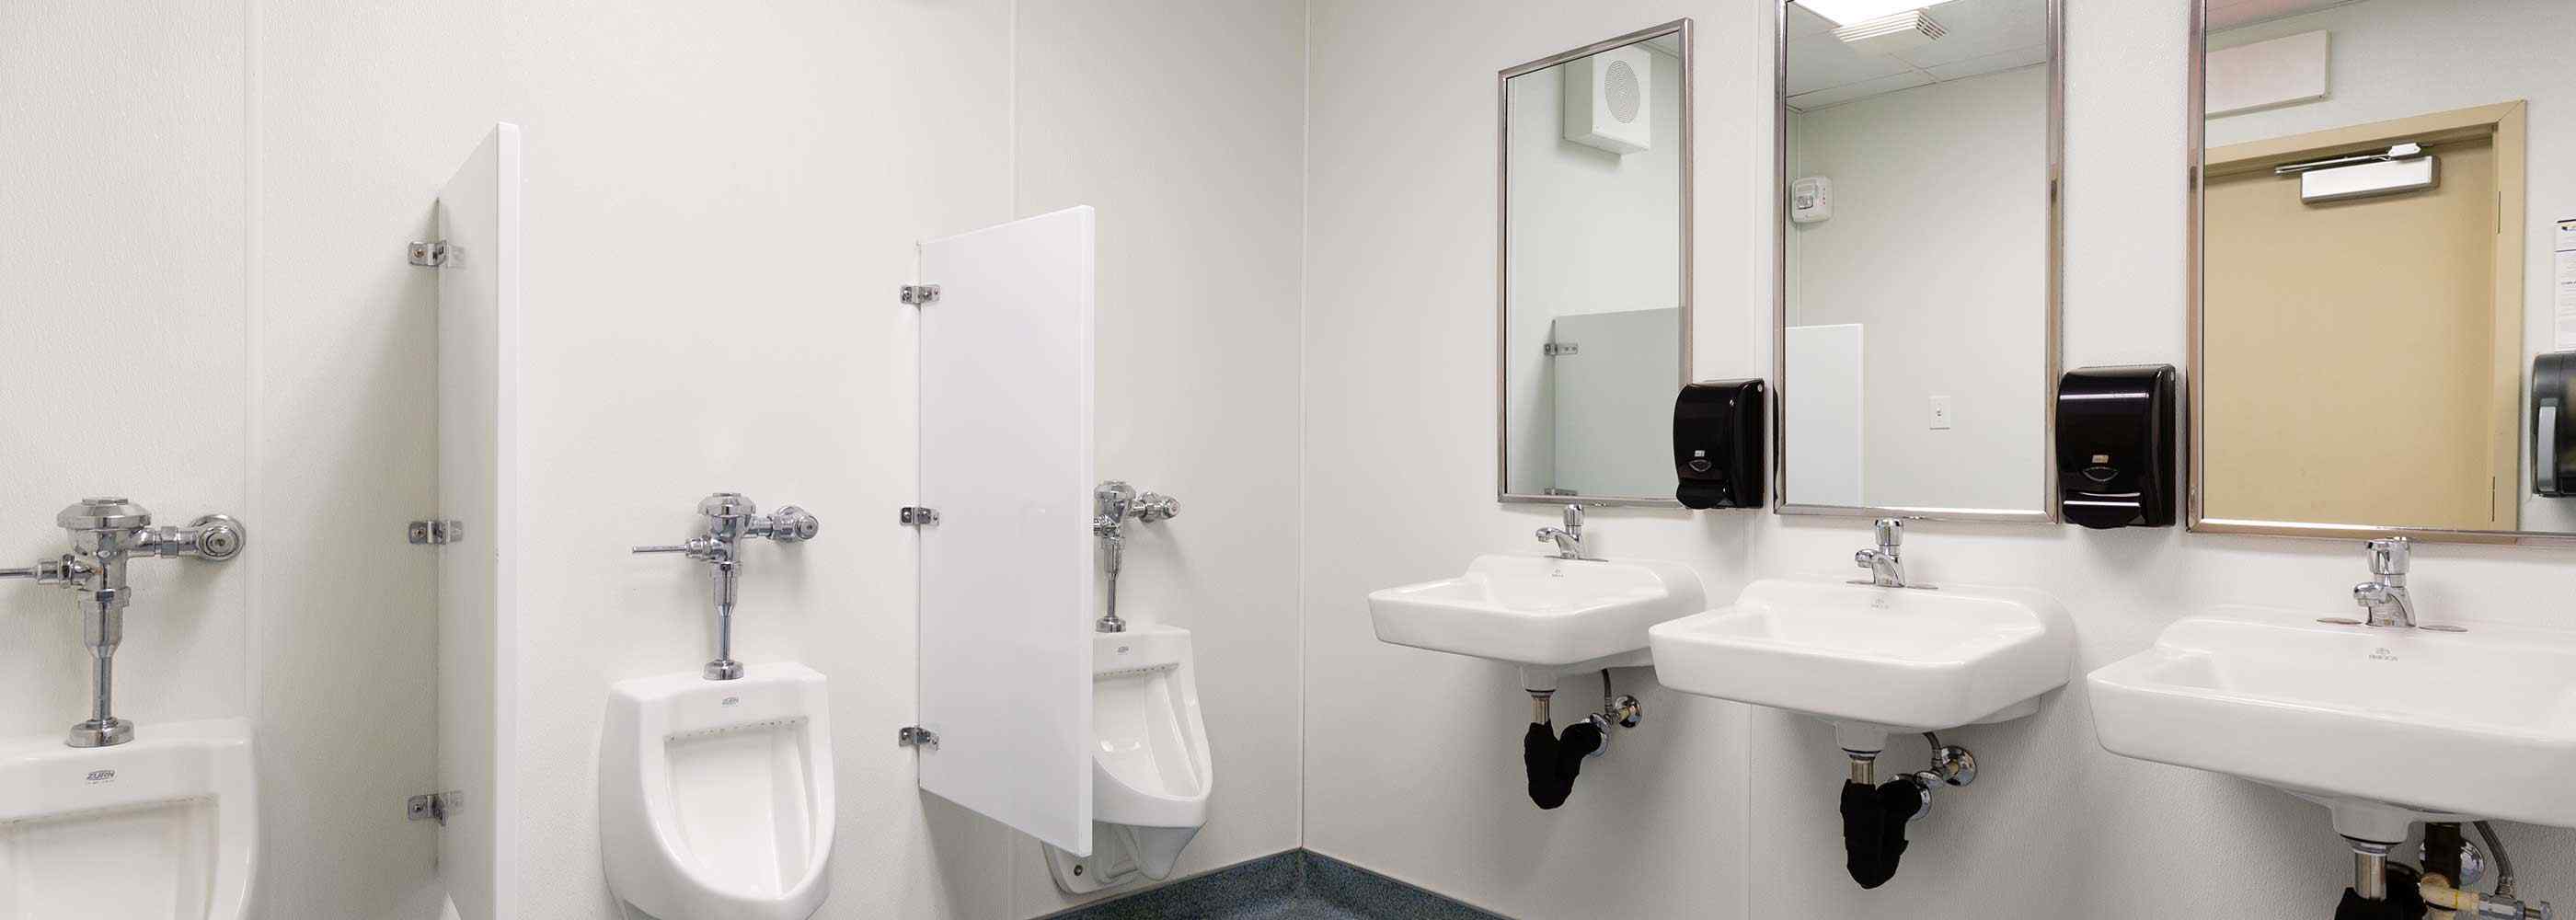 Handwash basin and mirrors